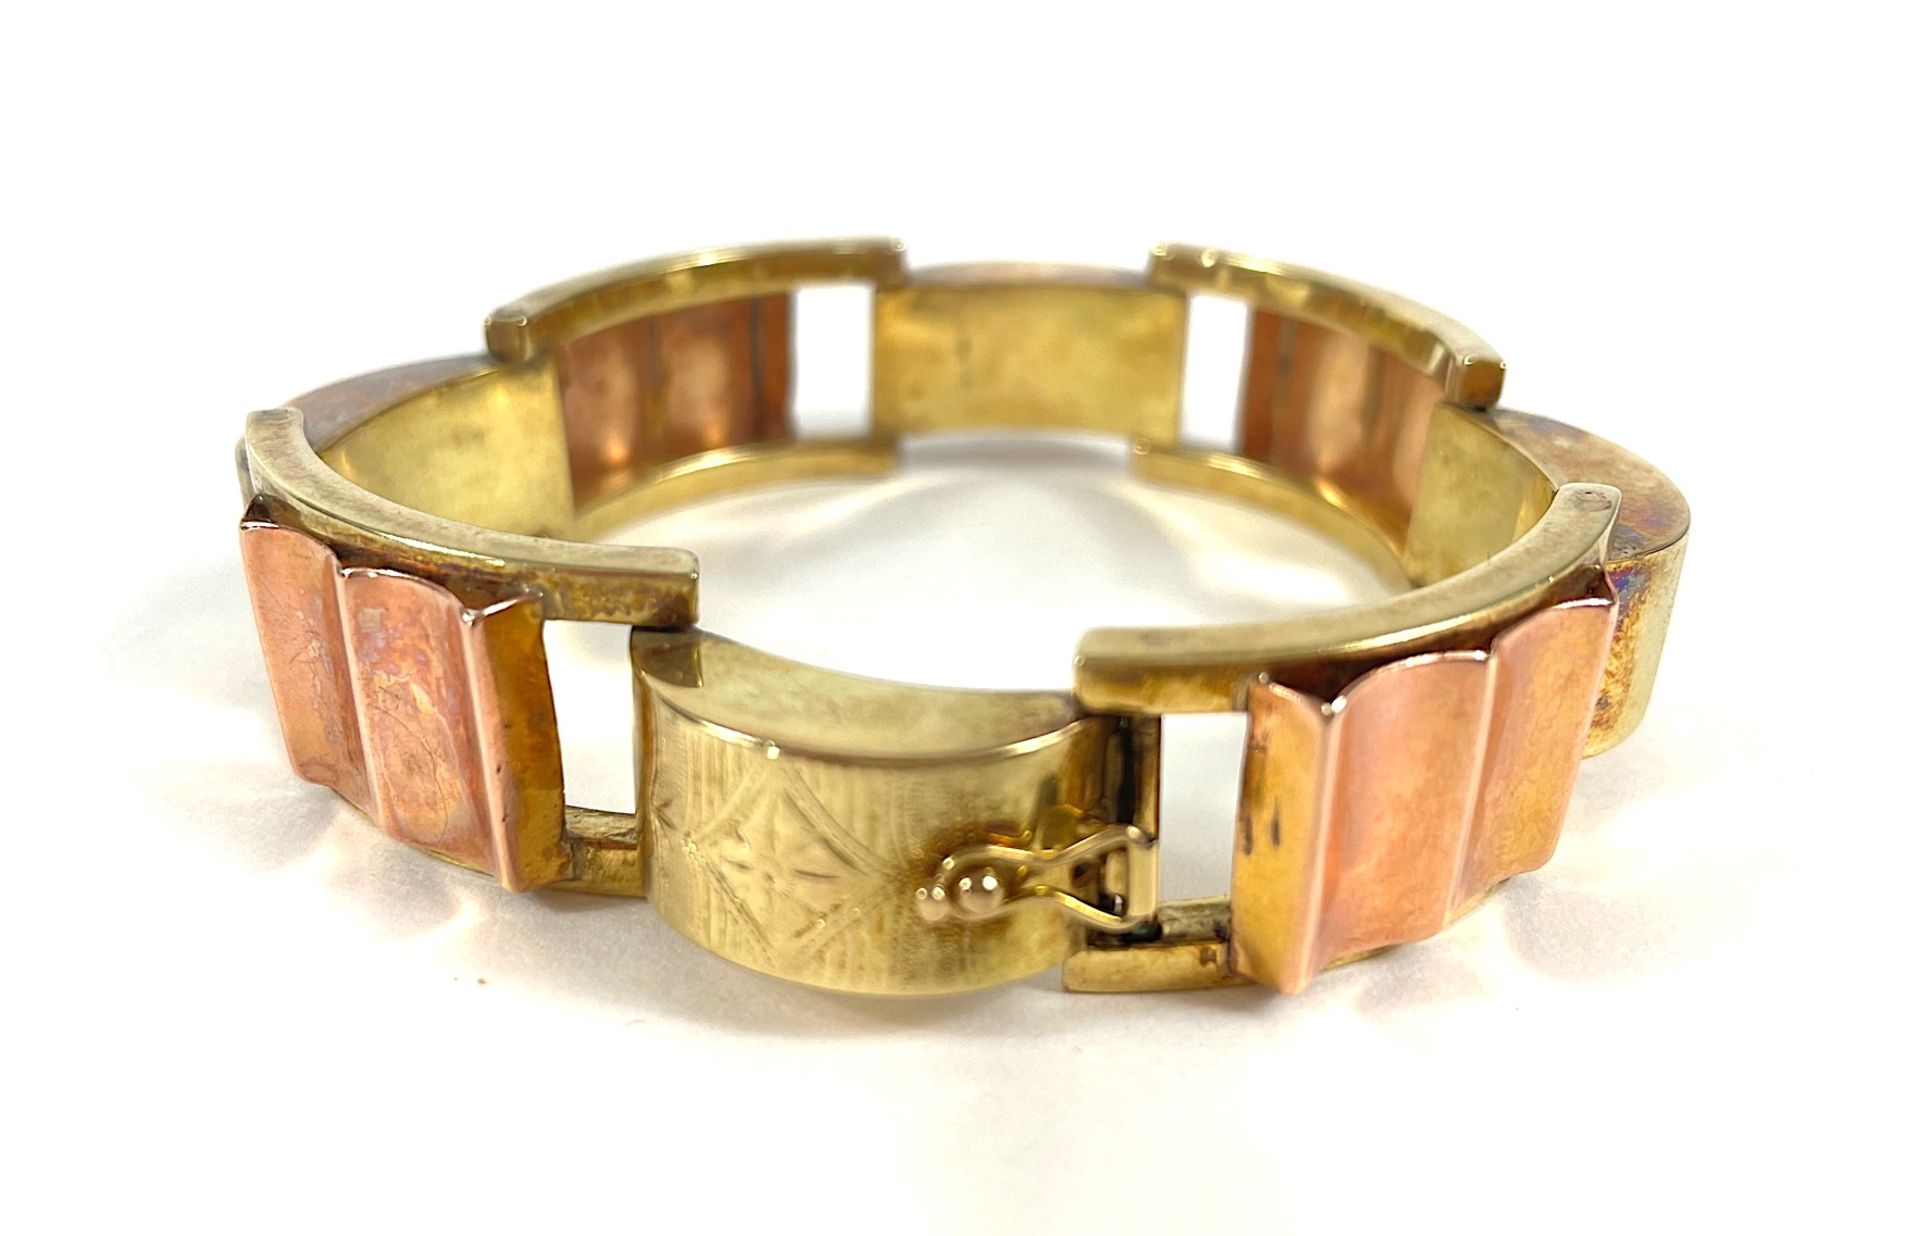 Bracelet 14 K rose gold/gold - Image 2 of 3